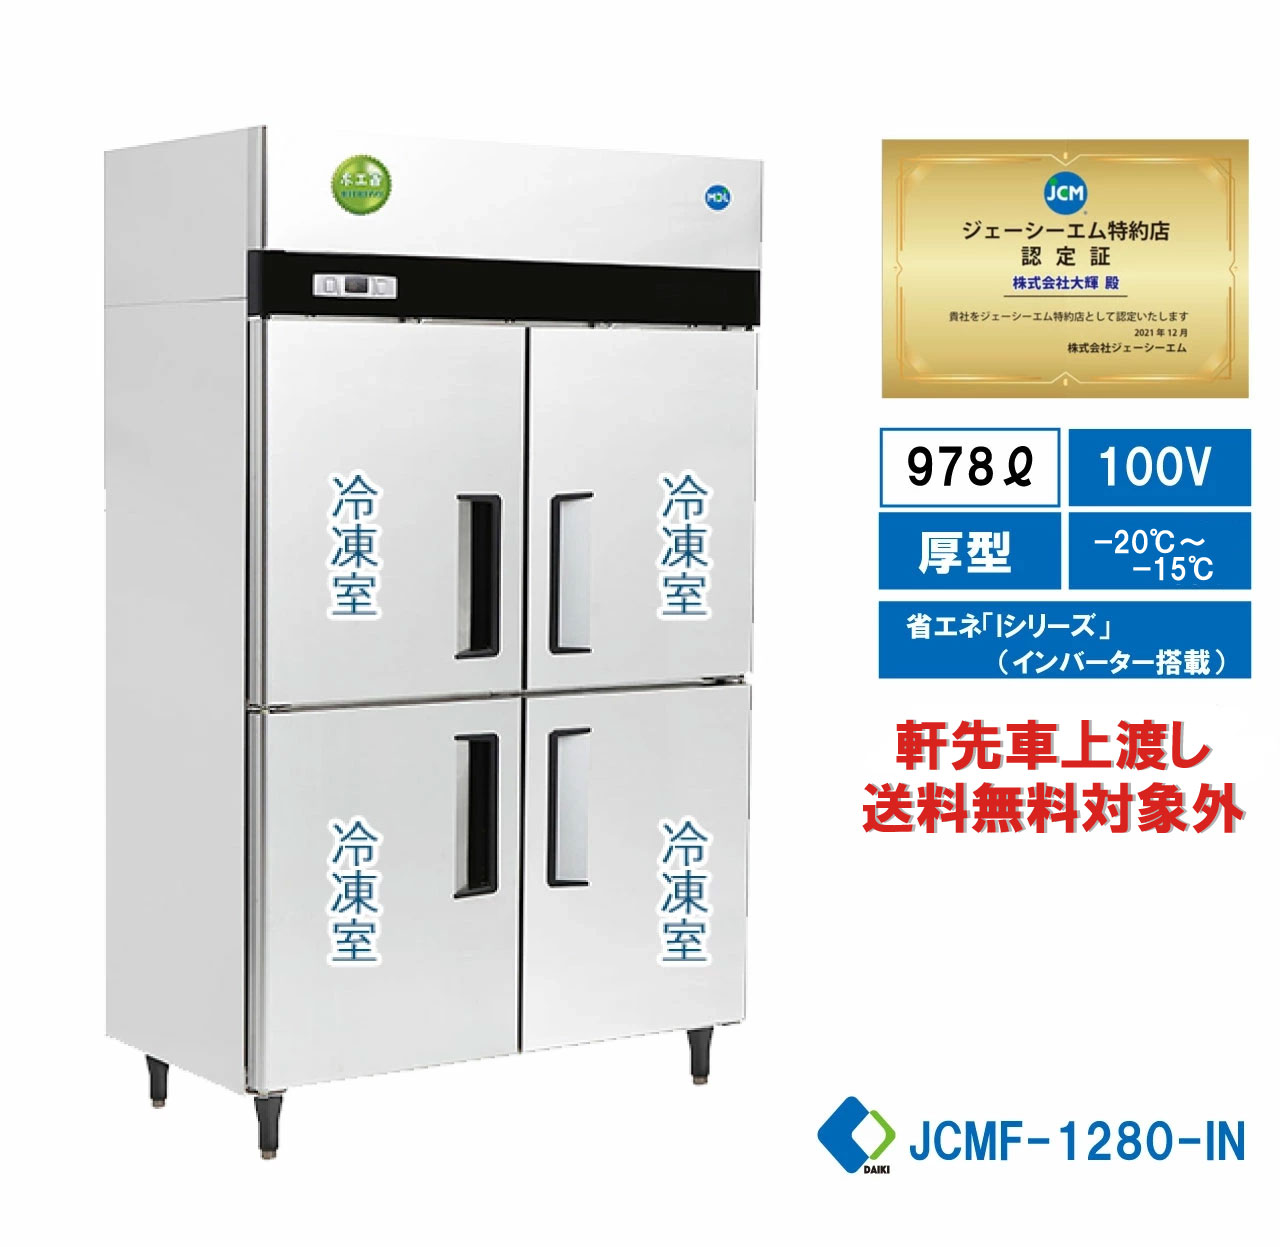  業務用 JCM省エネ タテ型冷凍庫 産業用冷凍庫 4ドア冷凍庫 厚型 100ボルド仕様 大容量タイプ